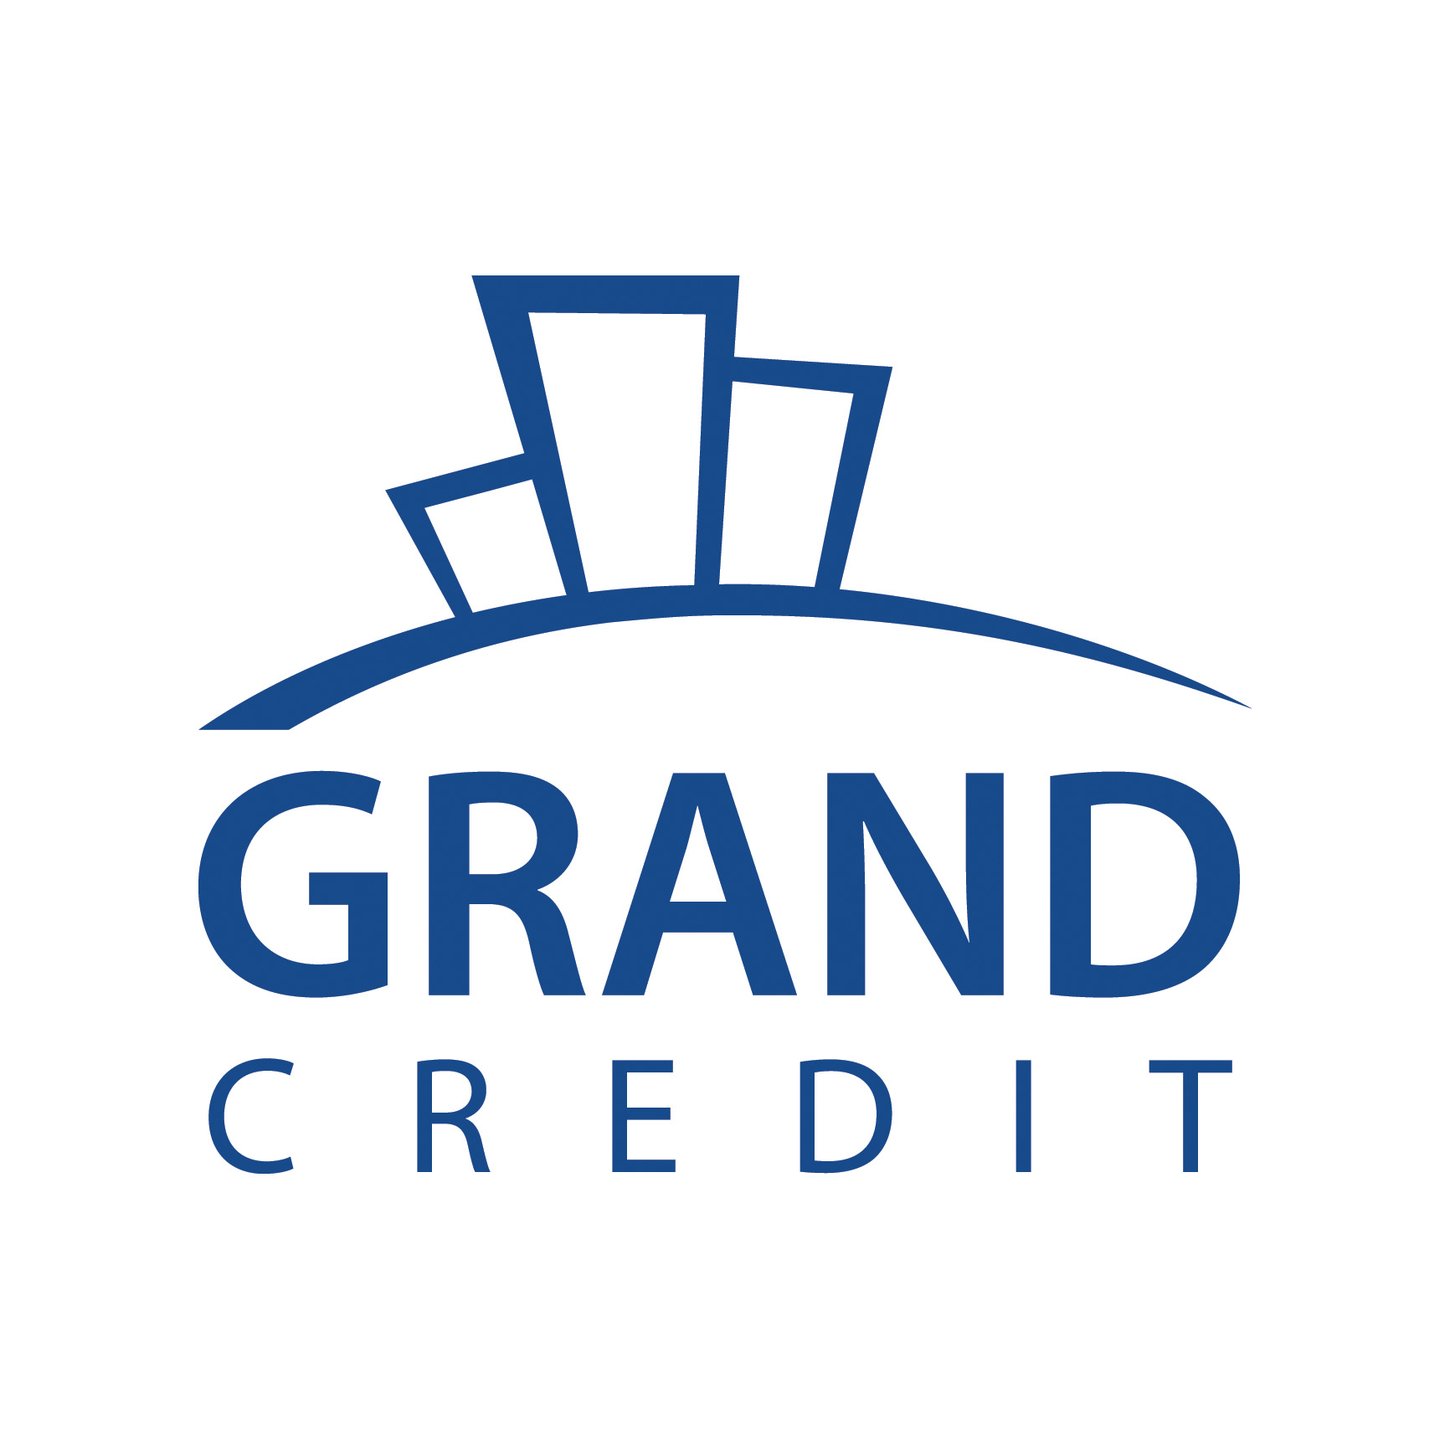 Порядок работы Grand Credit с 30 апреля по 11 мая